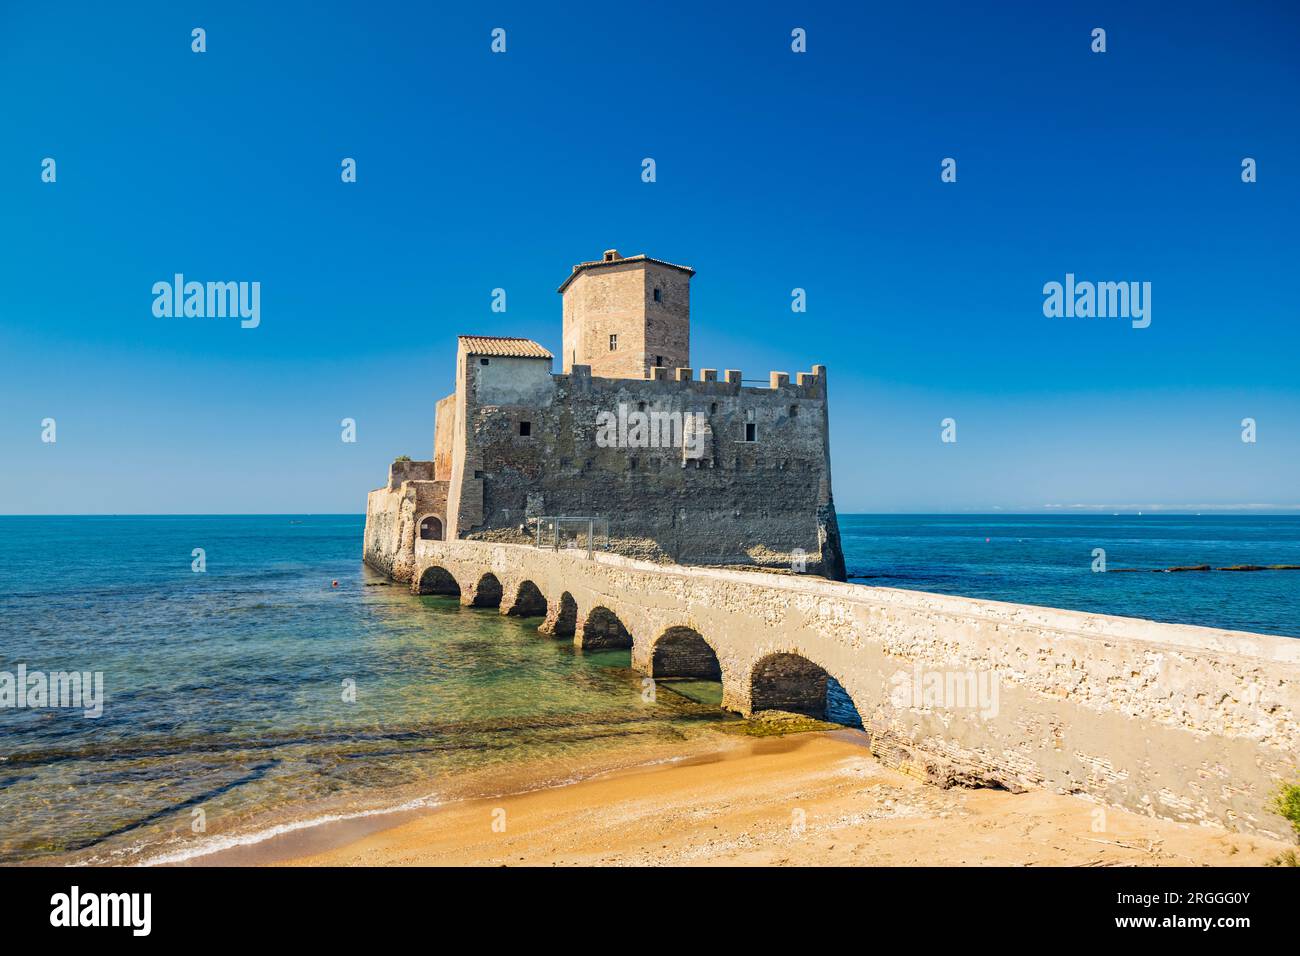 Das Naturschutzgebiet Torre Astura in Nettuno. Die alte Burg am Meer mit dem Wachturm und den Überresten der antiken römischen Gebäude. Ein Stein br Stockfoto